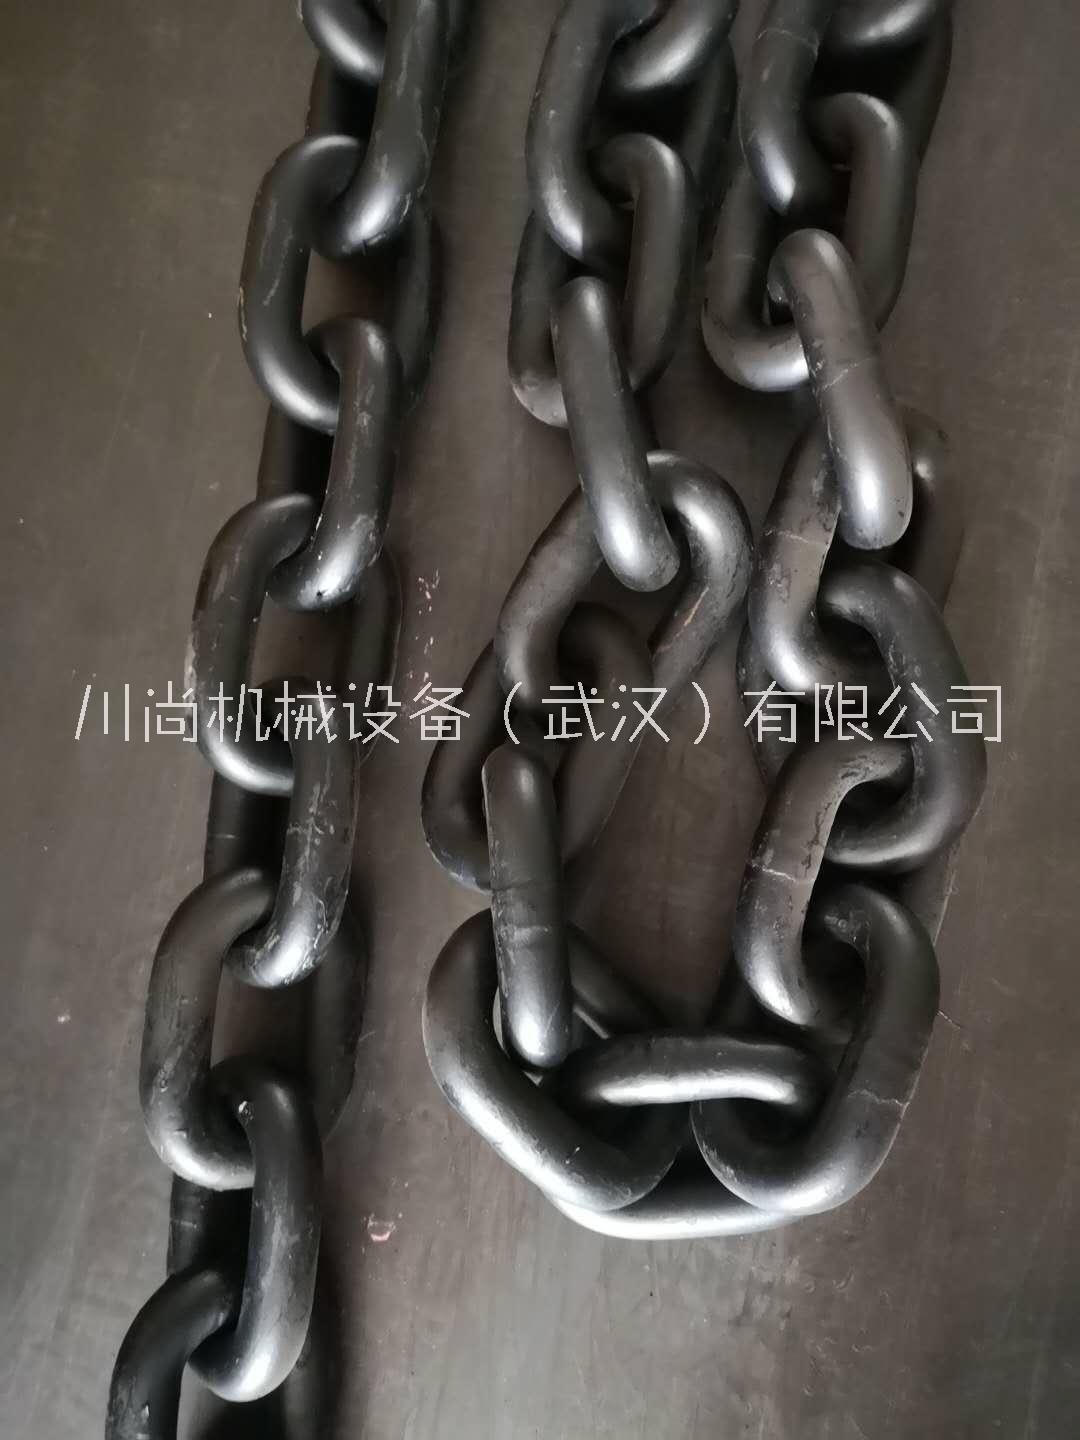 武汉市现货供应德国THIELE链条 蒂勒起重链条 进口起重链条索具TWN16mm链条厂家